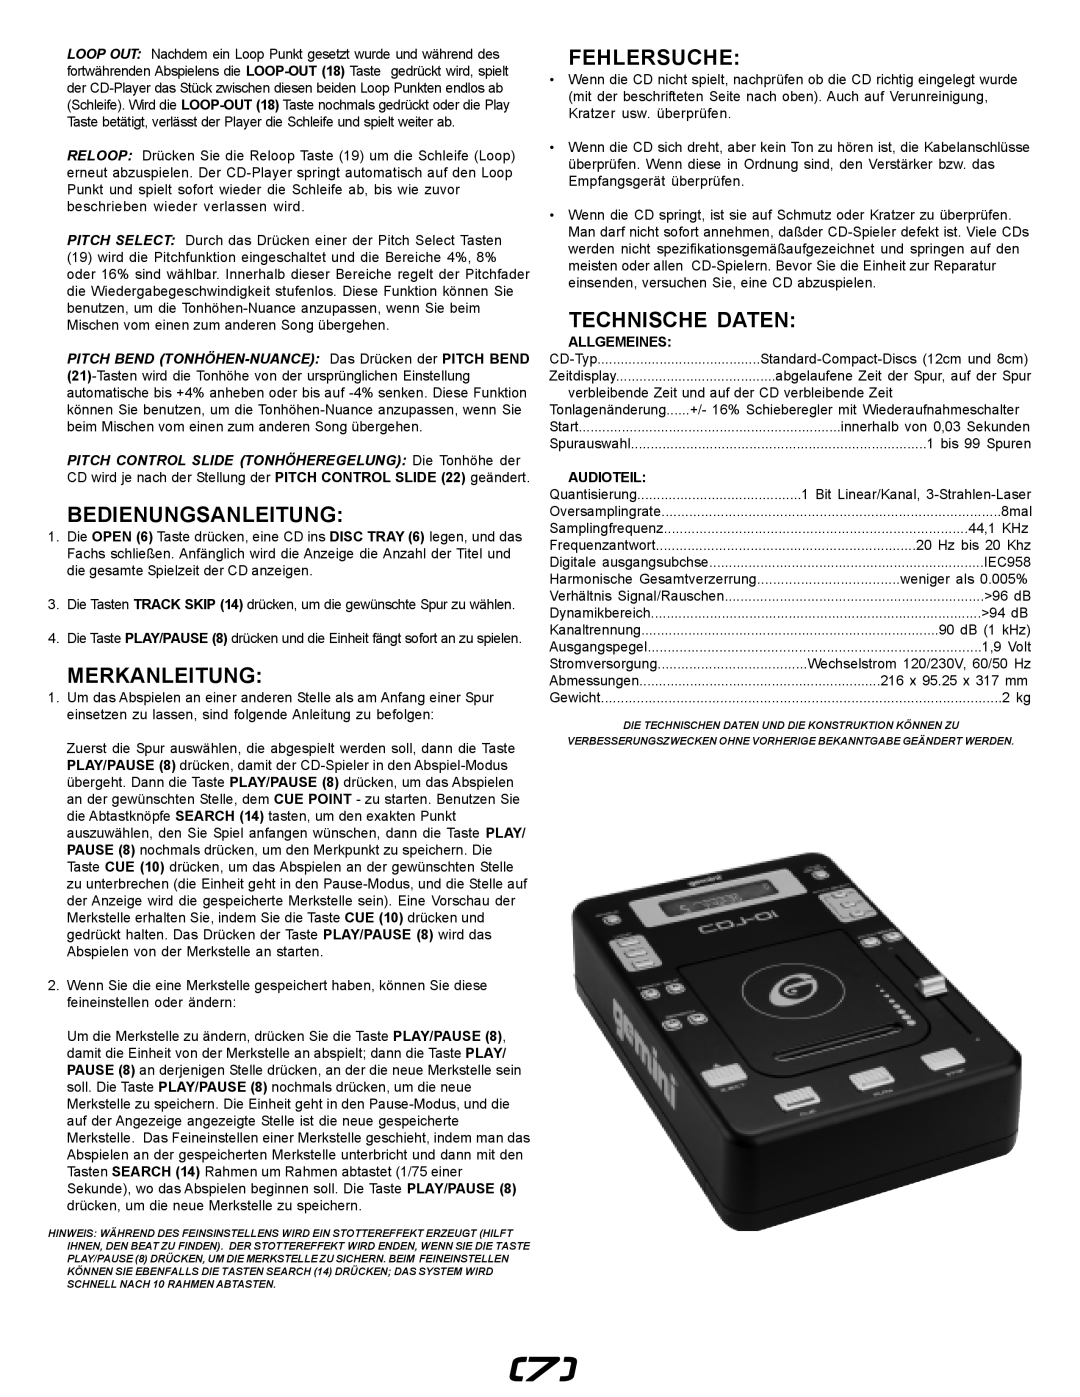 Gemini CDJ-0I manual Bedienungsanleitung, Merkanleitung, Fehlersuche, Technische Daten, Allgemeines, Audioteil 